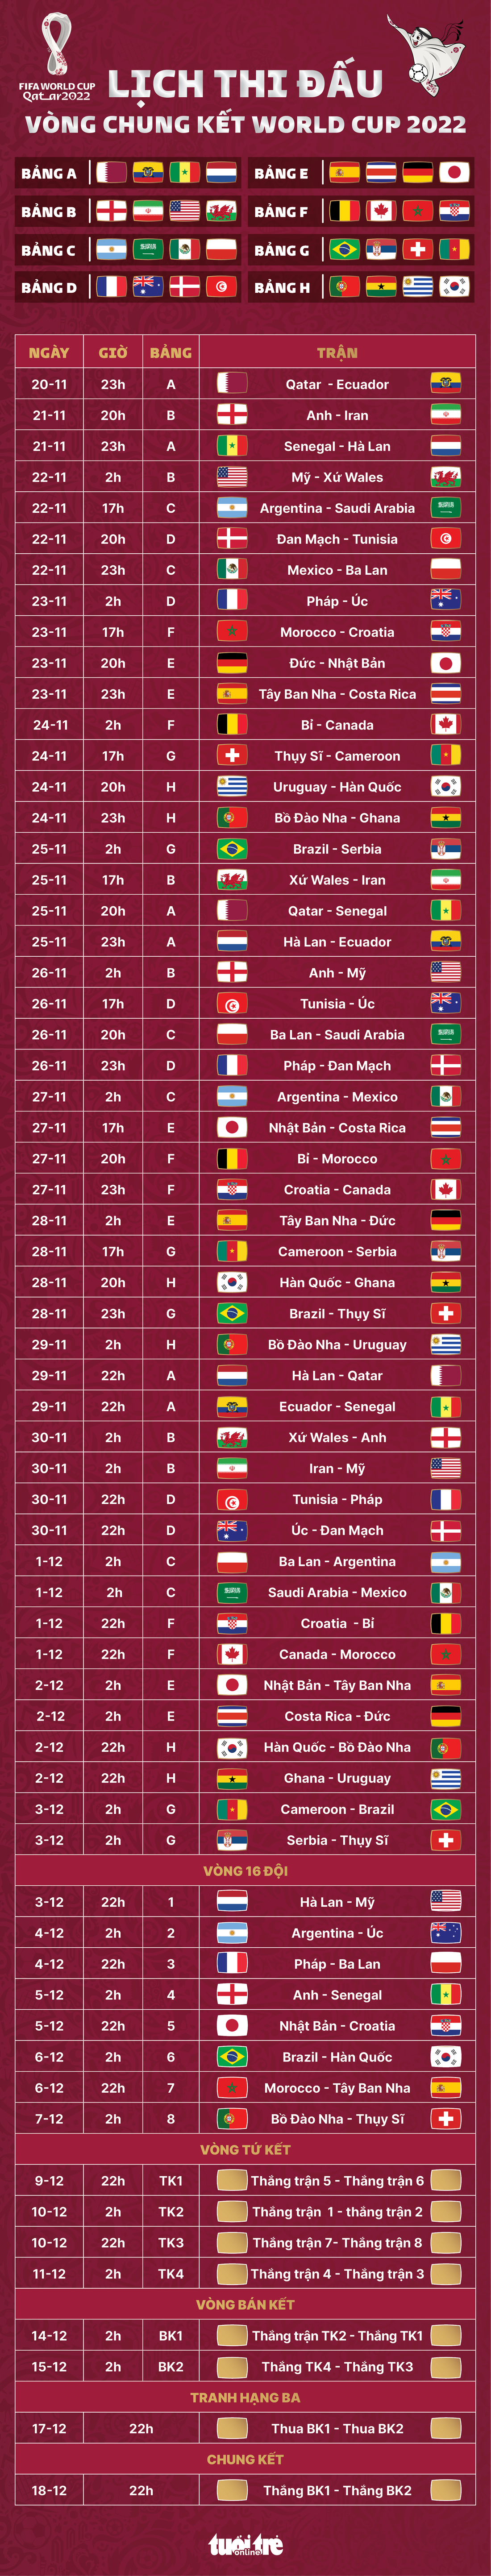 Lịch thi đấu toàn bộ 64 trận đấu tại World Cup 2022 - Ảnh 1.